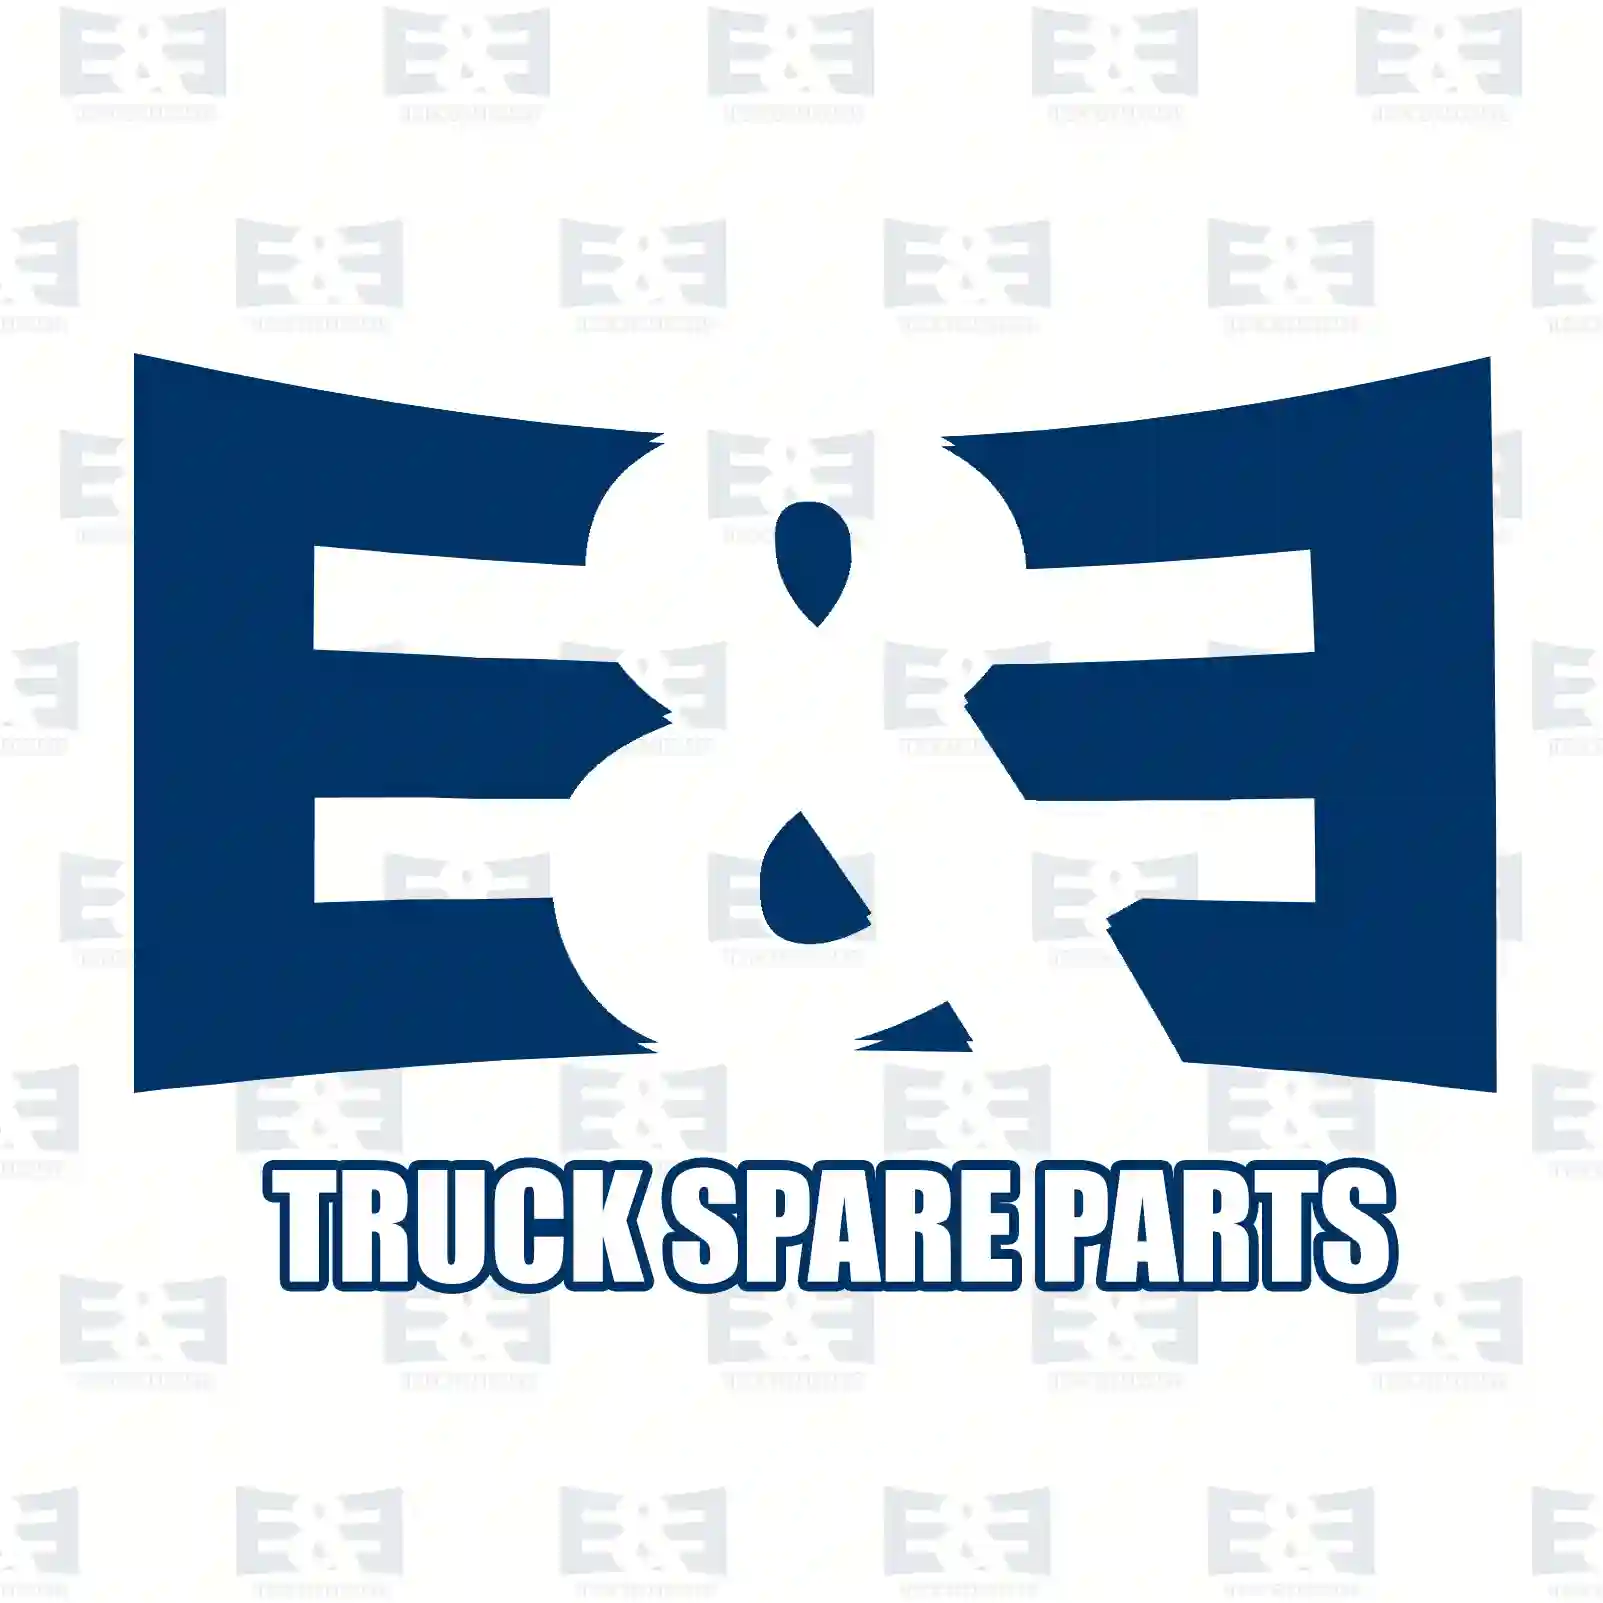 General overhaul kit, 2E2200116, 51009006627 ||  2E2200116 E&E Truck Spare Parts | Truck Spare Parts, Auotomotive Spare Parts General overhaul kit, 2E2200116, 51009006627 ||  2E2200116 E&E Truck Spare Parts | Truck Spare Parts, Auotomotive Spare Parts